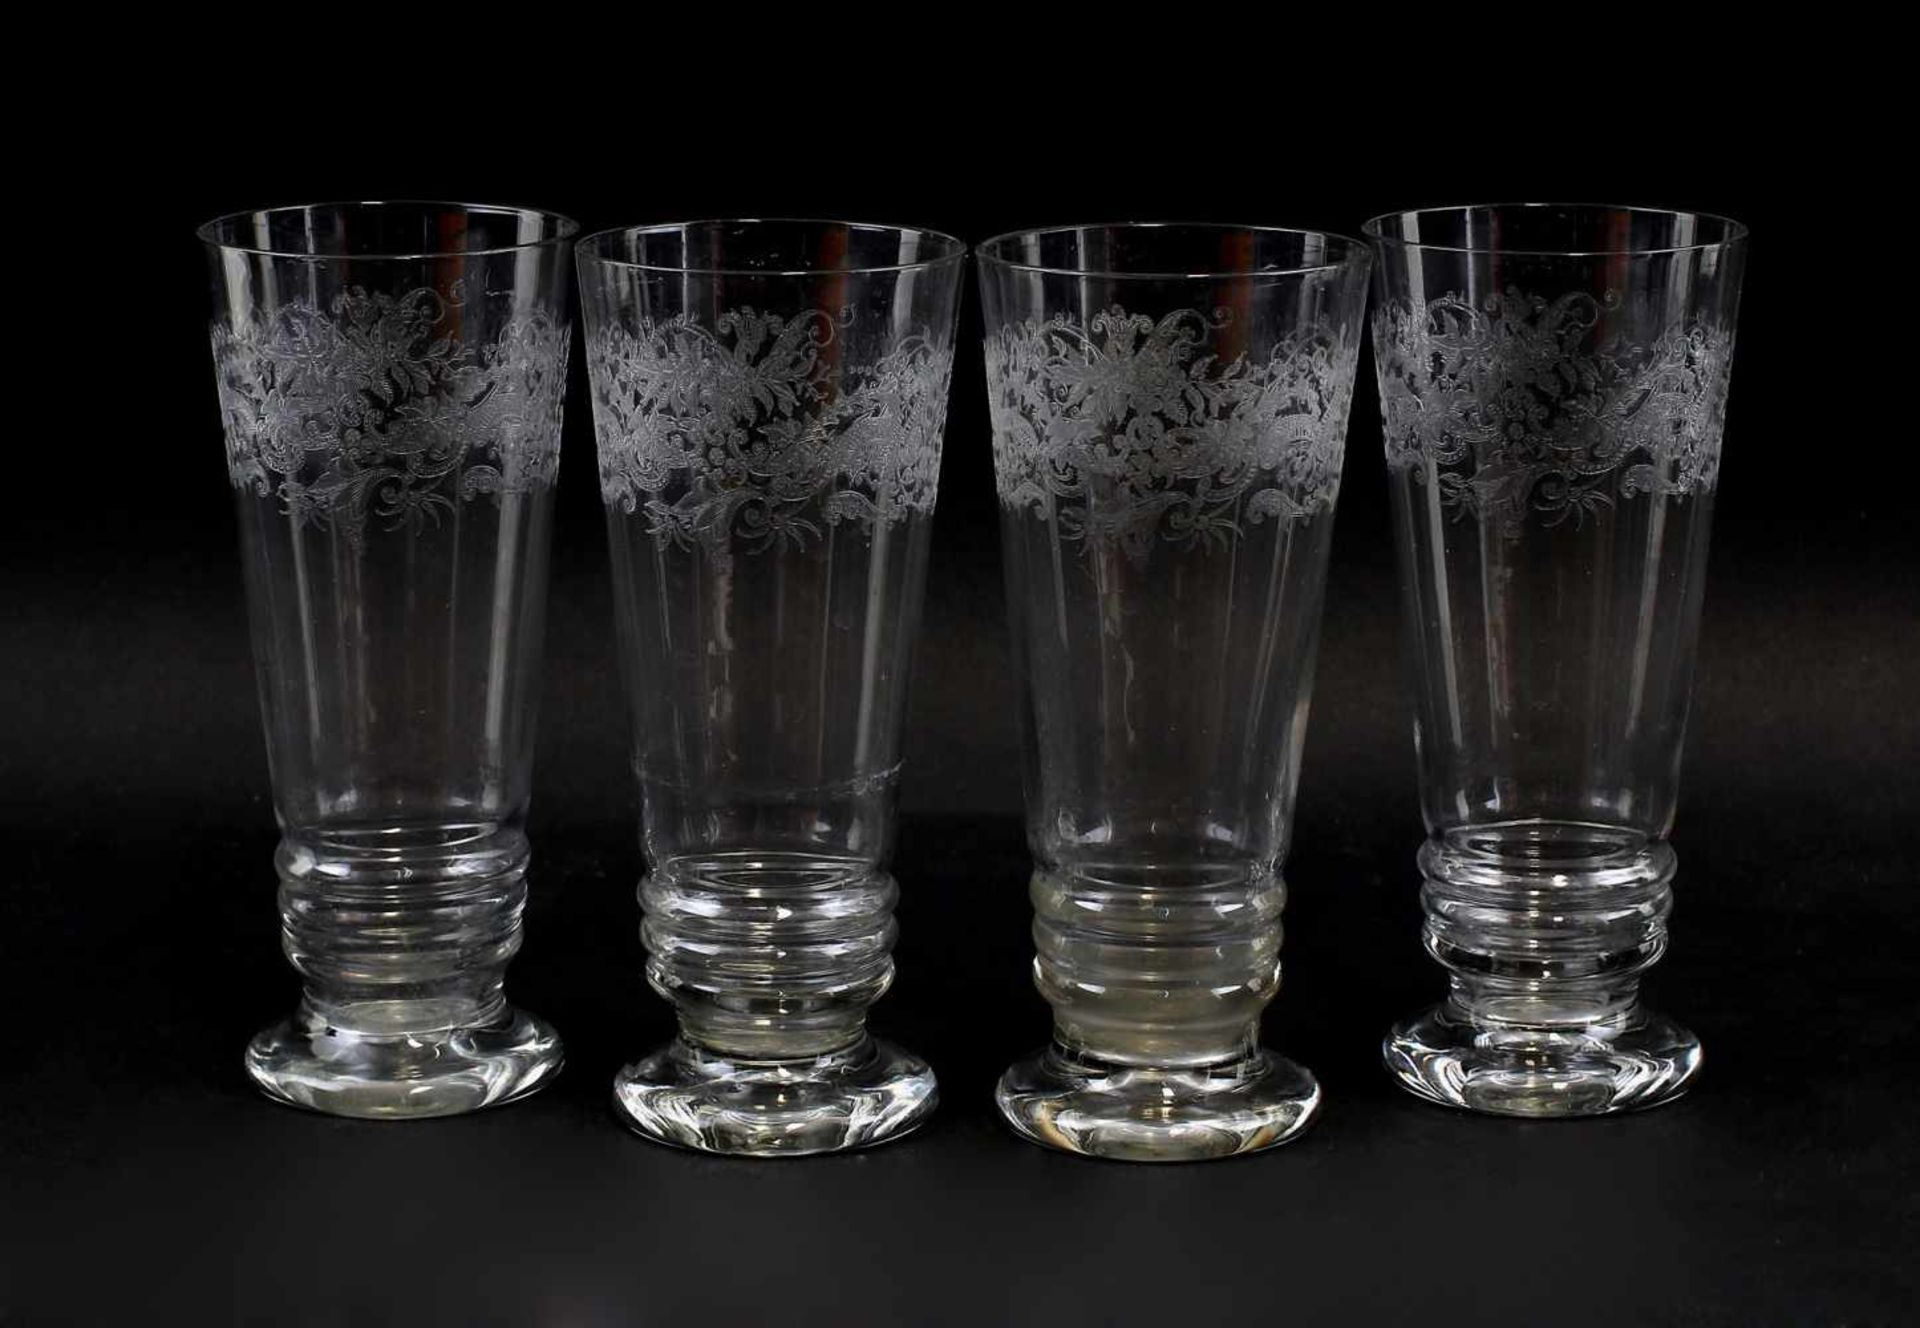 4 Becher-Gläserum 1920, farbloses Glas, im oberen Drittel umlaufendes Dekorband, H 18cm - Image 2 of 2